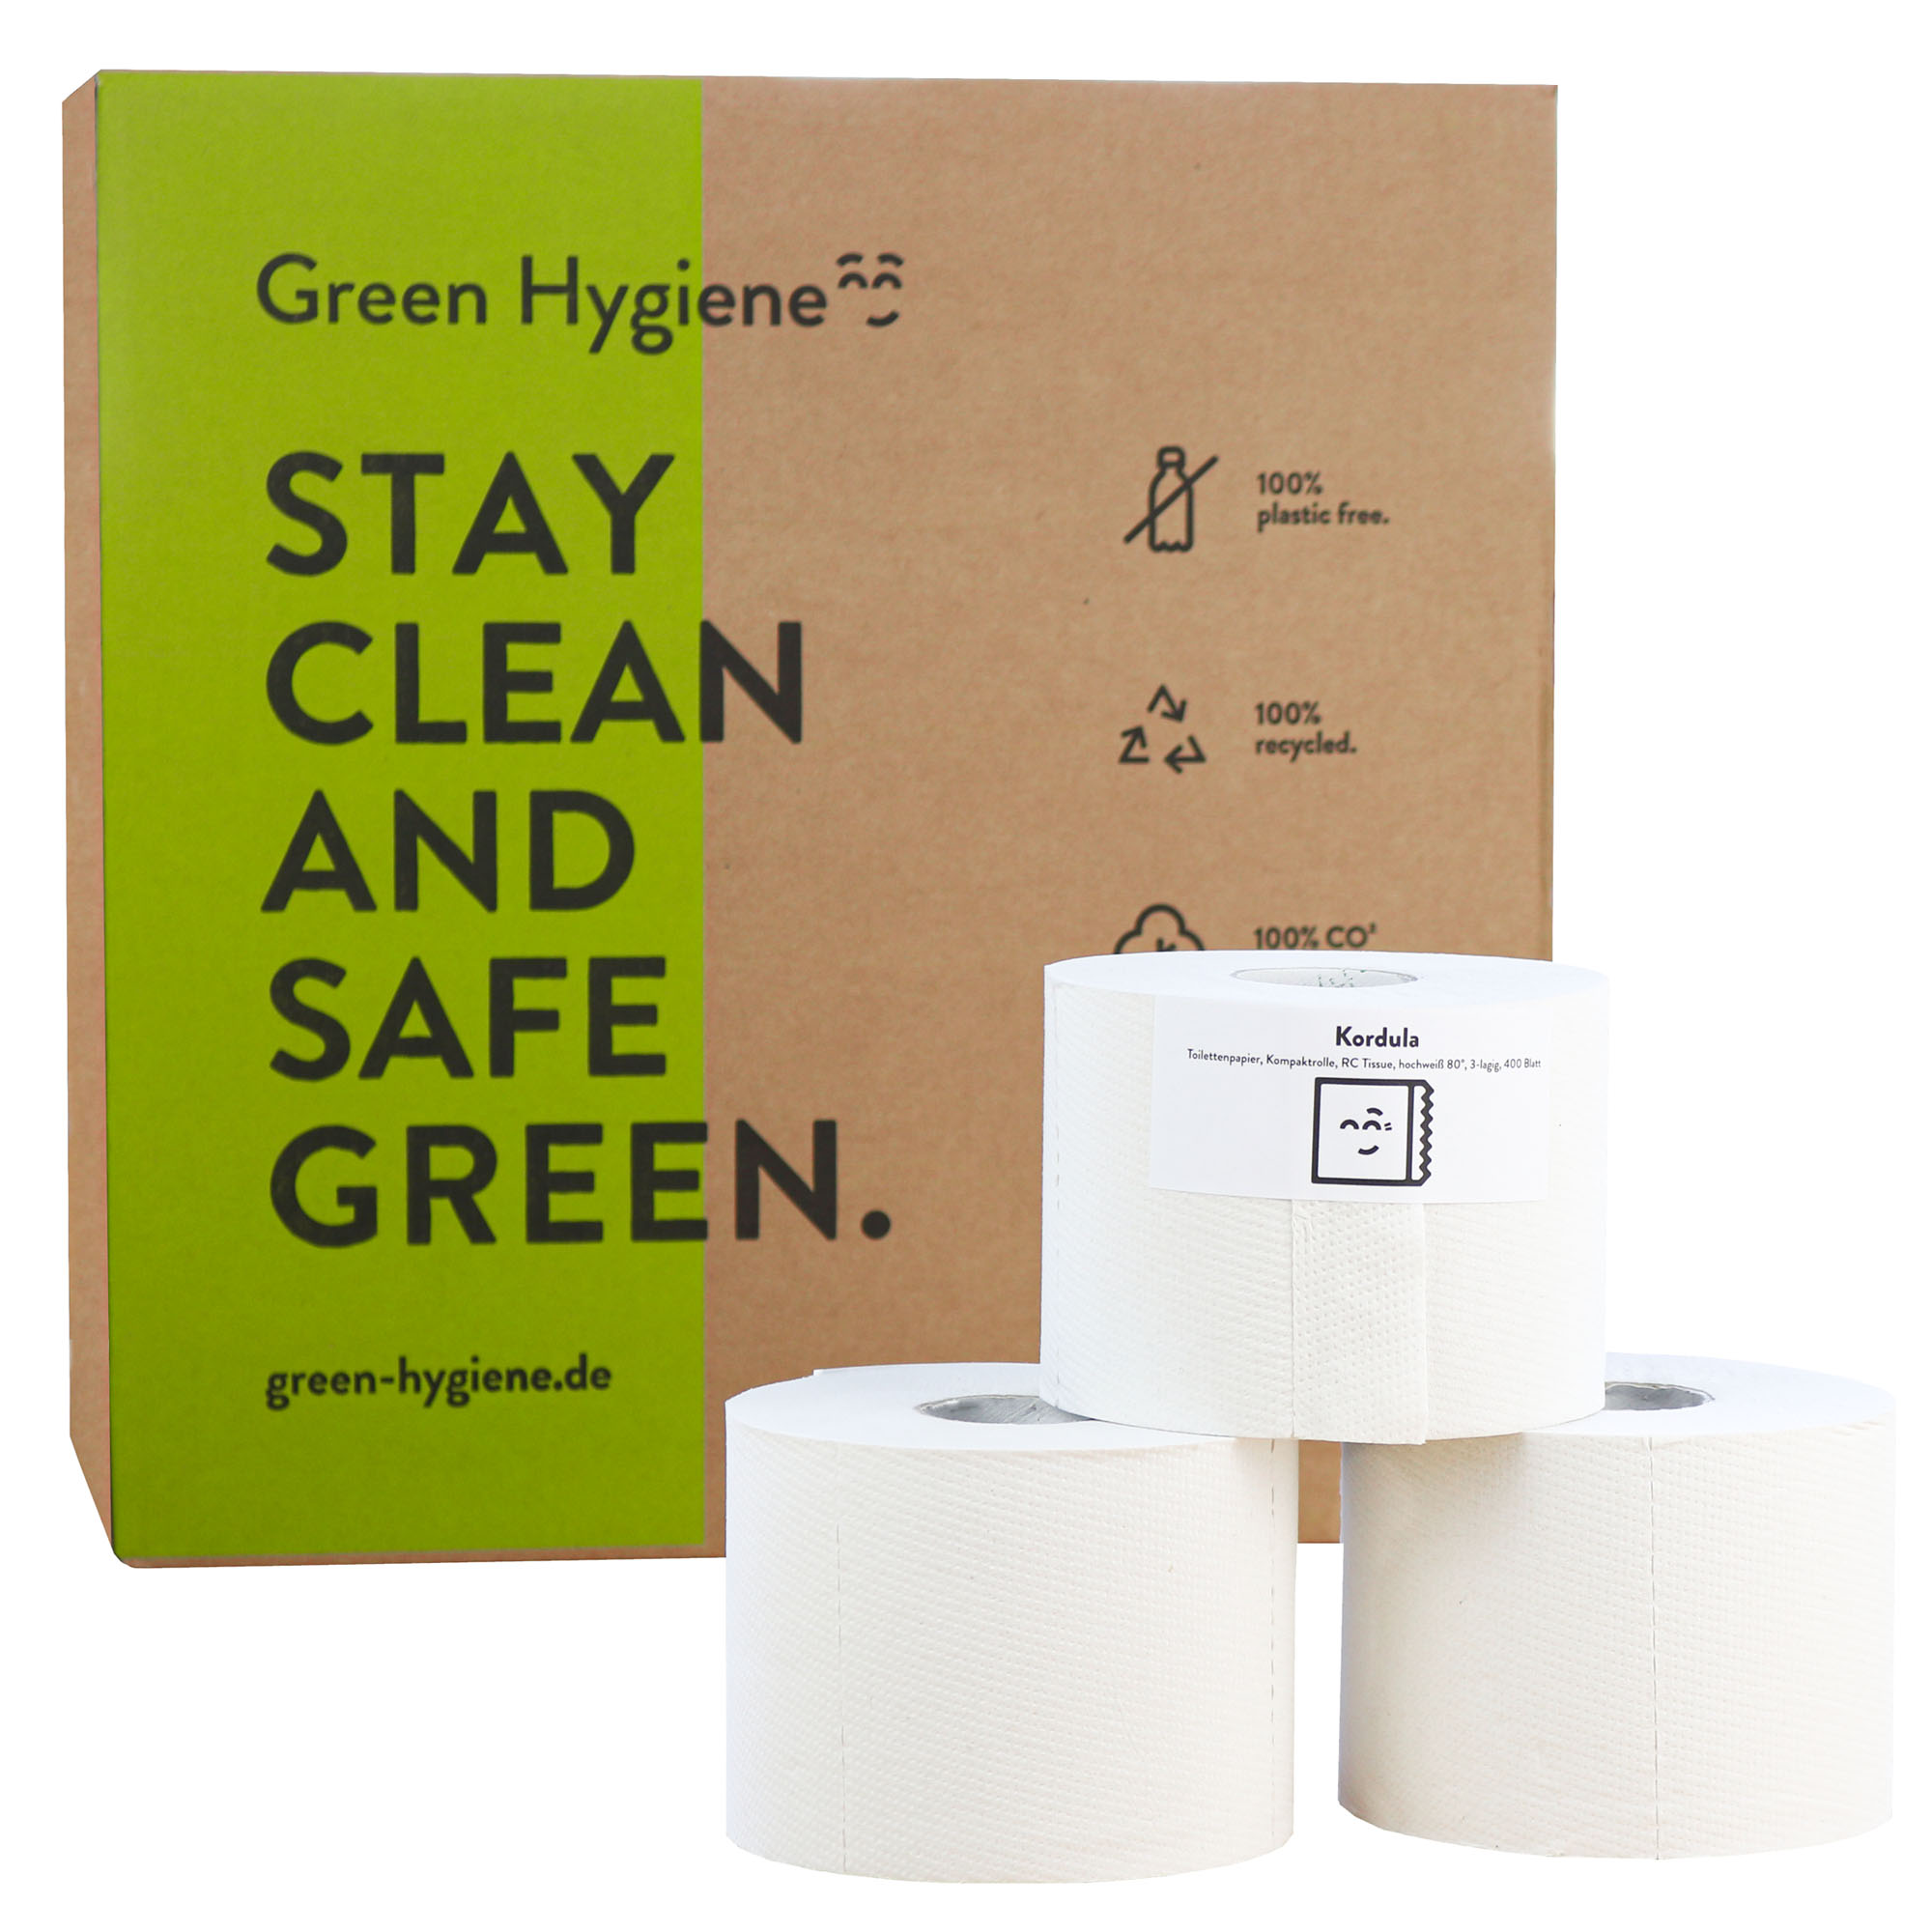 Green Hygiene KORDULA Toilettenpapier Kleinrolle 3-lagig, 400 Blatt